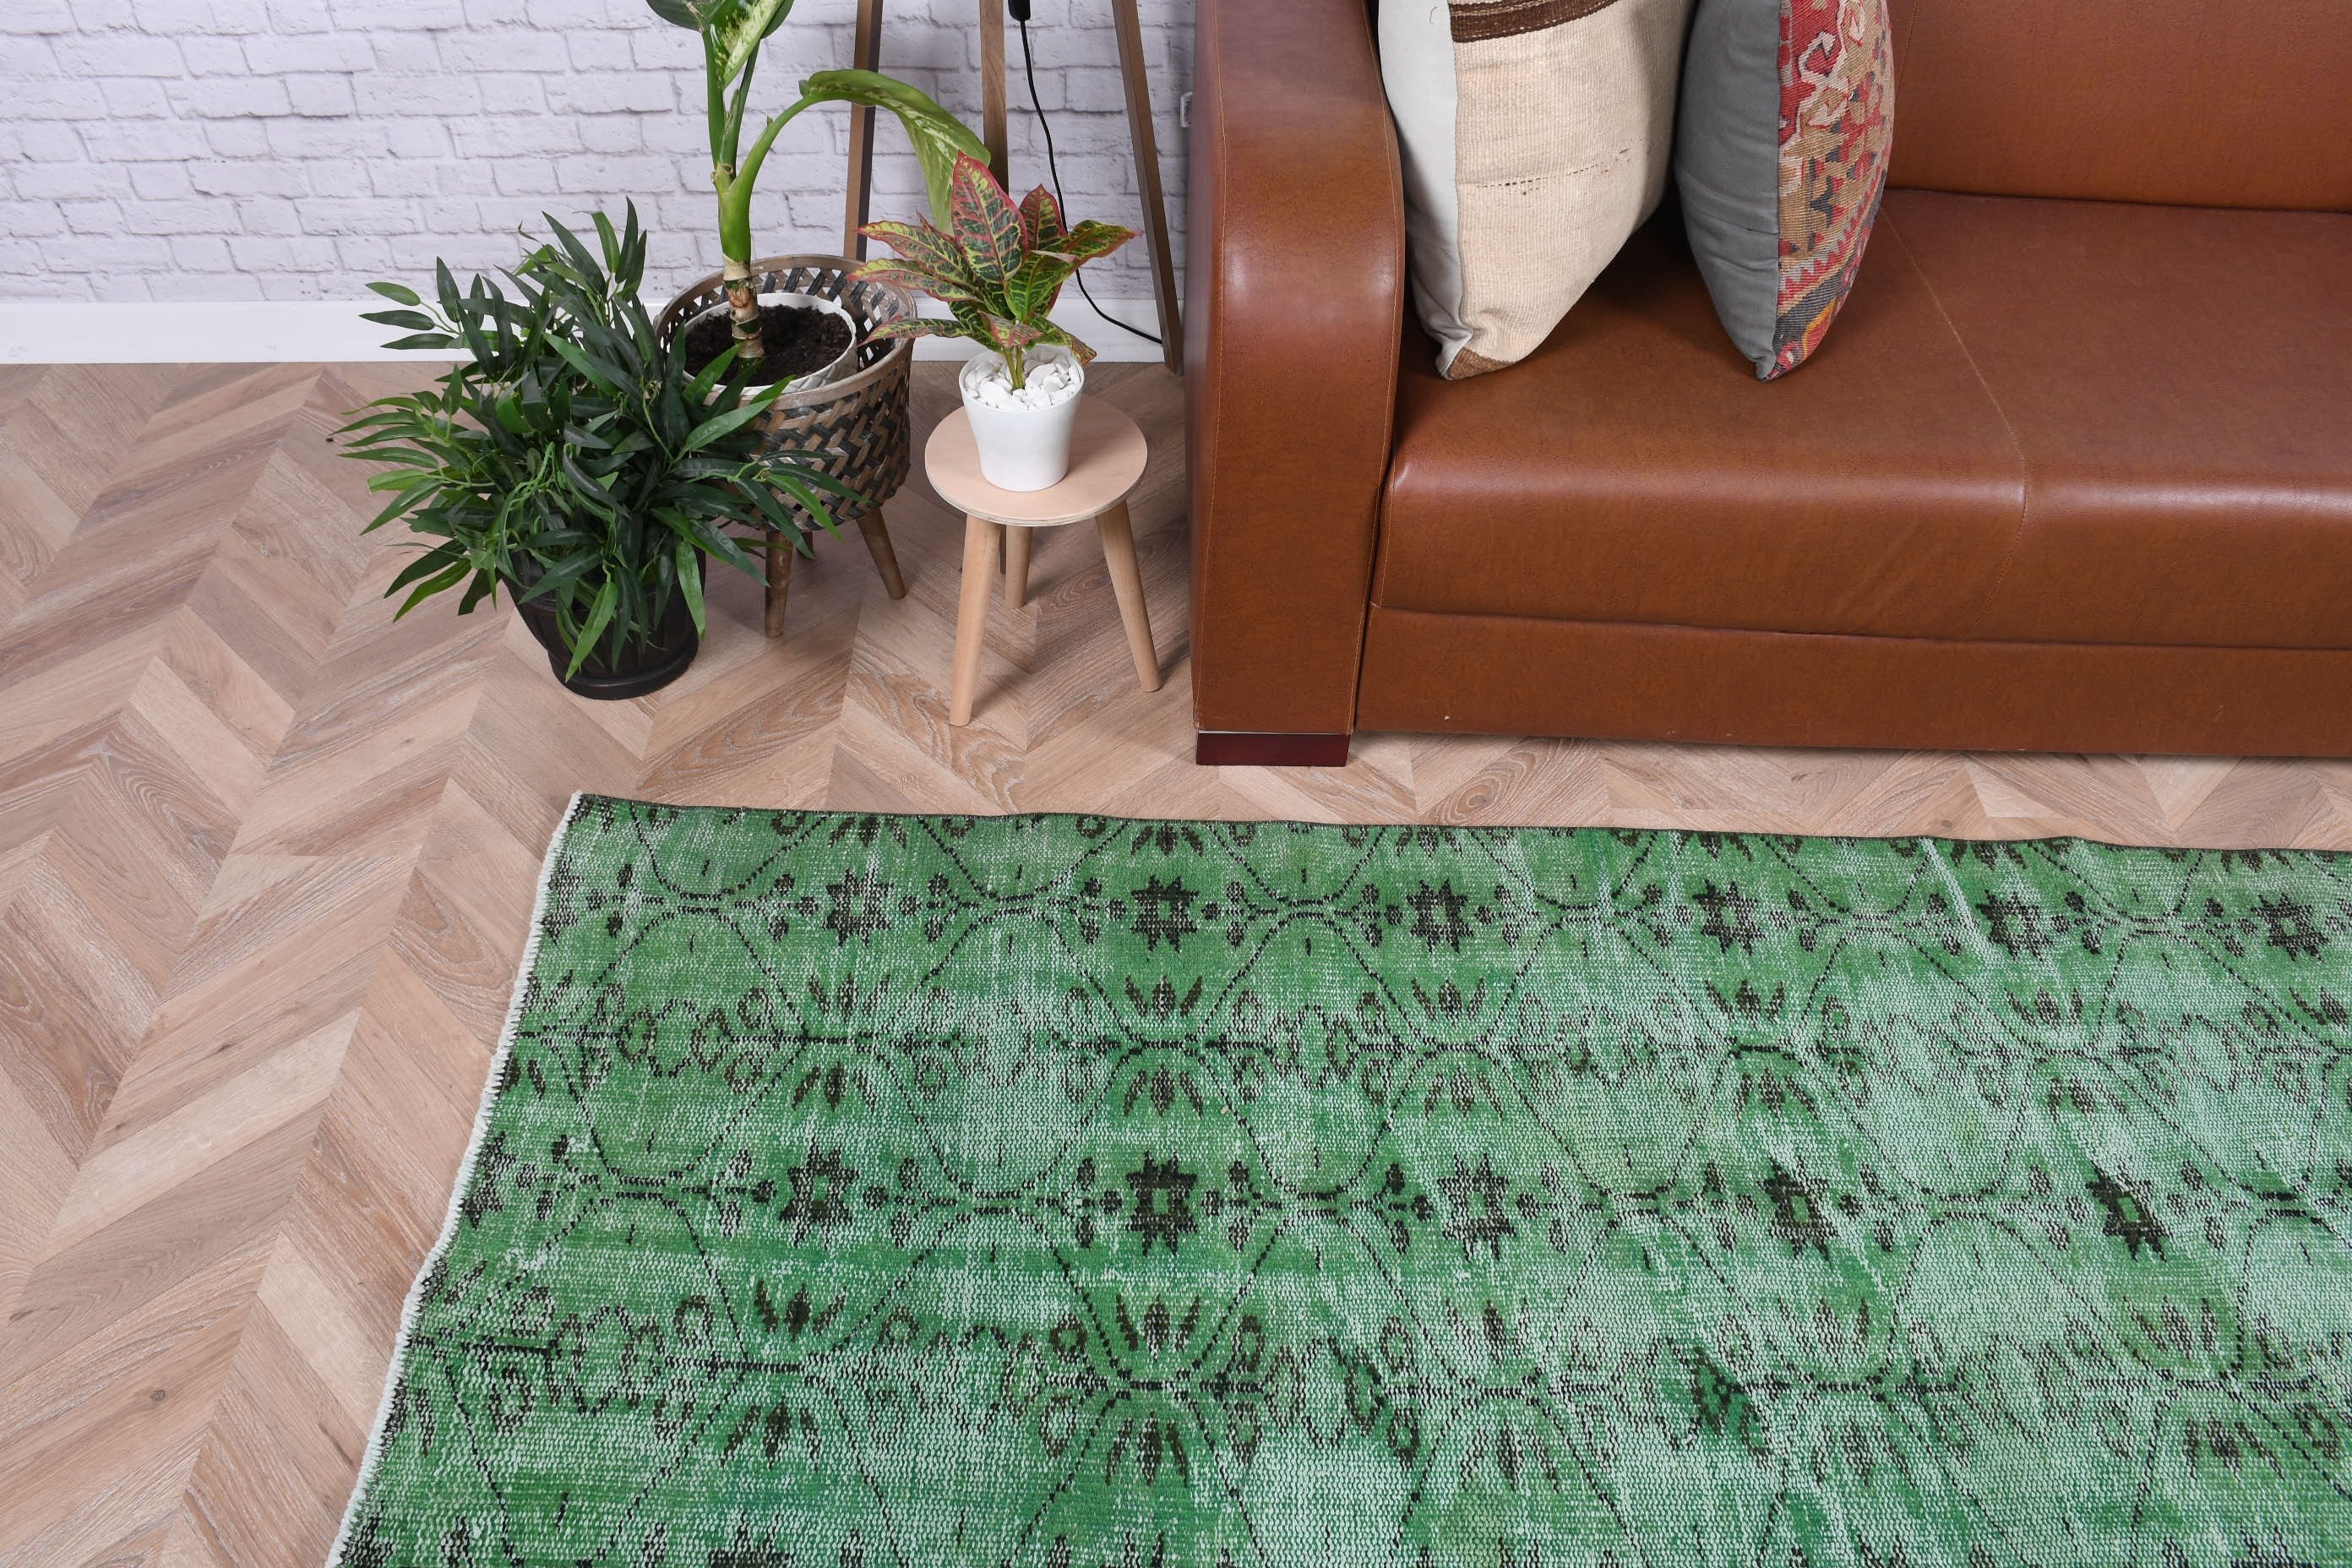 Green Oriental Rug, Bedroom Rugs, 6x9.7 ft Large Rug, Vintage Rug, Rugs for Bedroom, Turkish Rugs, Salon Rug, Moroccan Rug, Oriental Rug